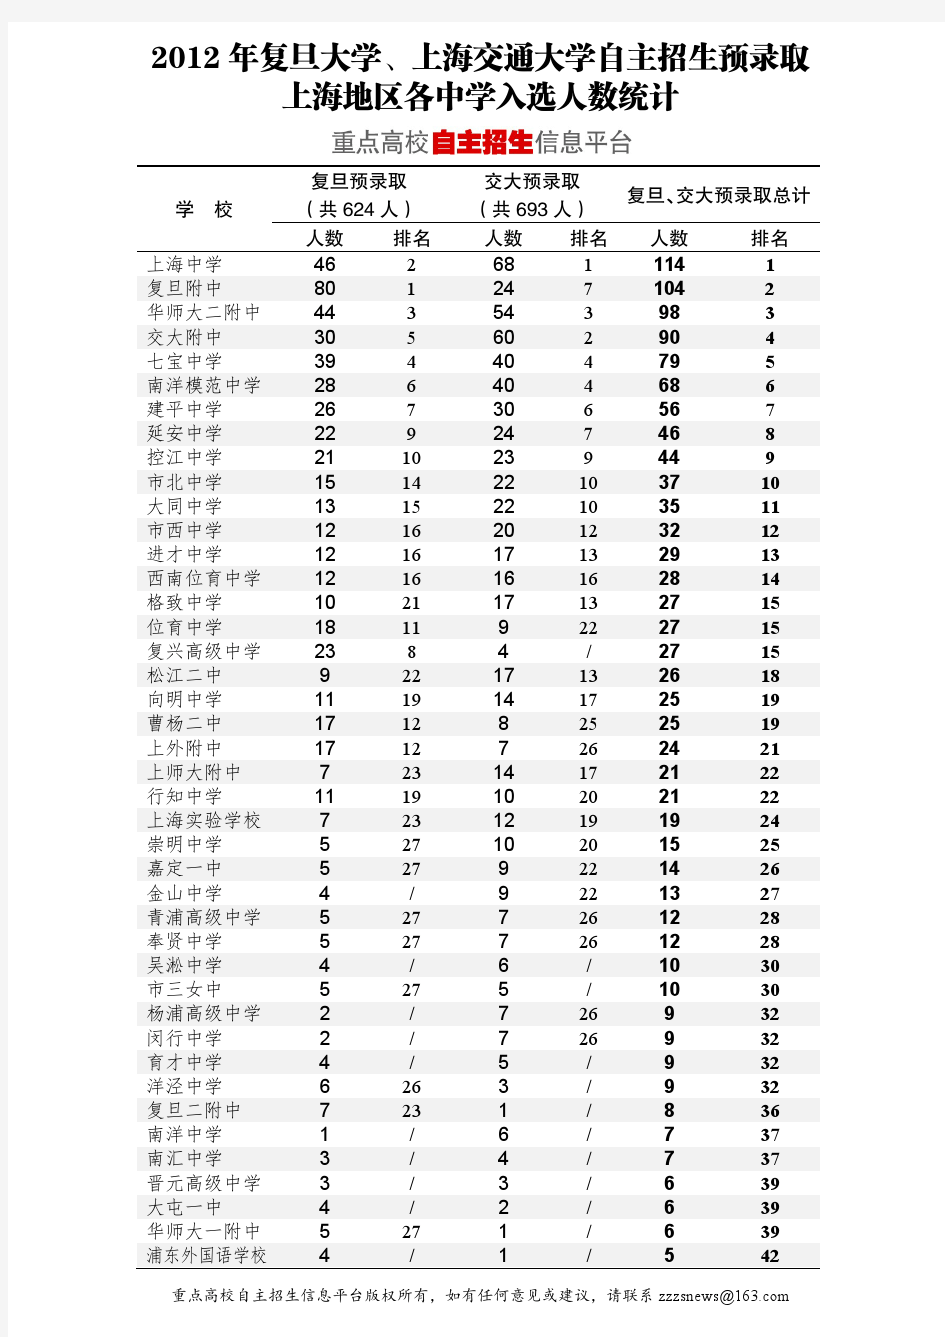 2012年上海市名牌大学自主招生考试分析报告